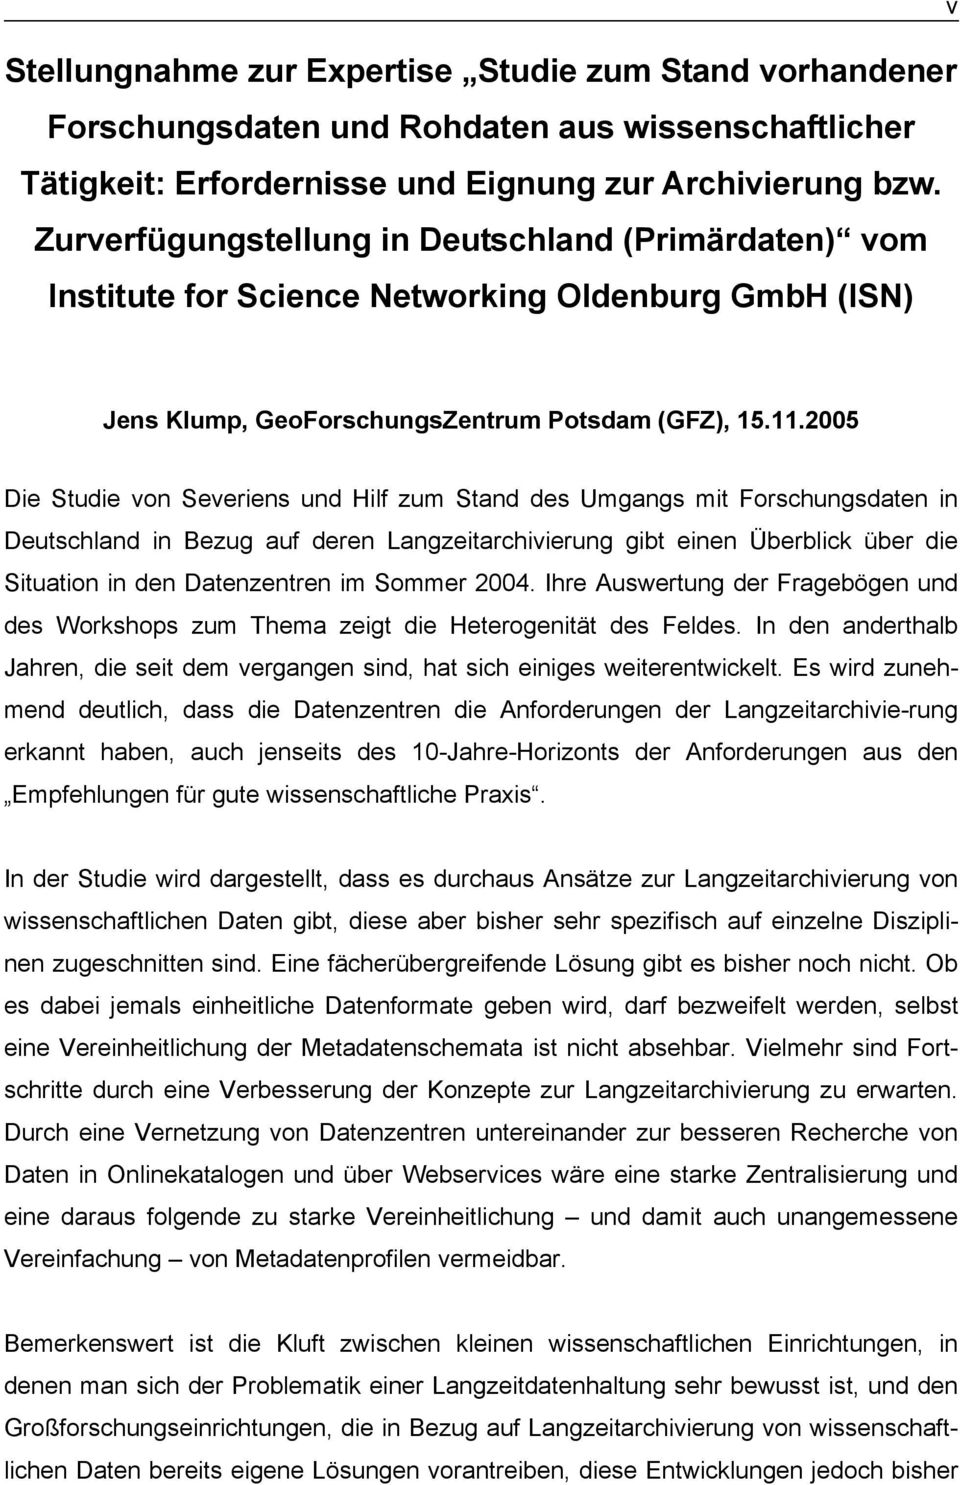 2005 Die Studie von Severiens und Hilf zum Stand des Umgangs mit Forschungsdaten in Deutschland in Bezug auf deren Langzeitarchivierung gibt einen Überblick über die Situation in den Datenzentren im